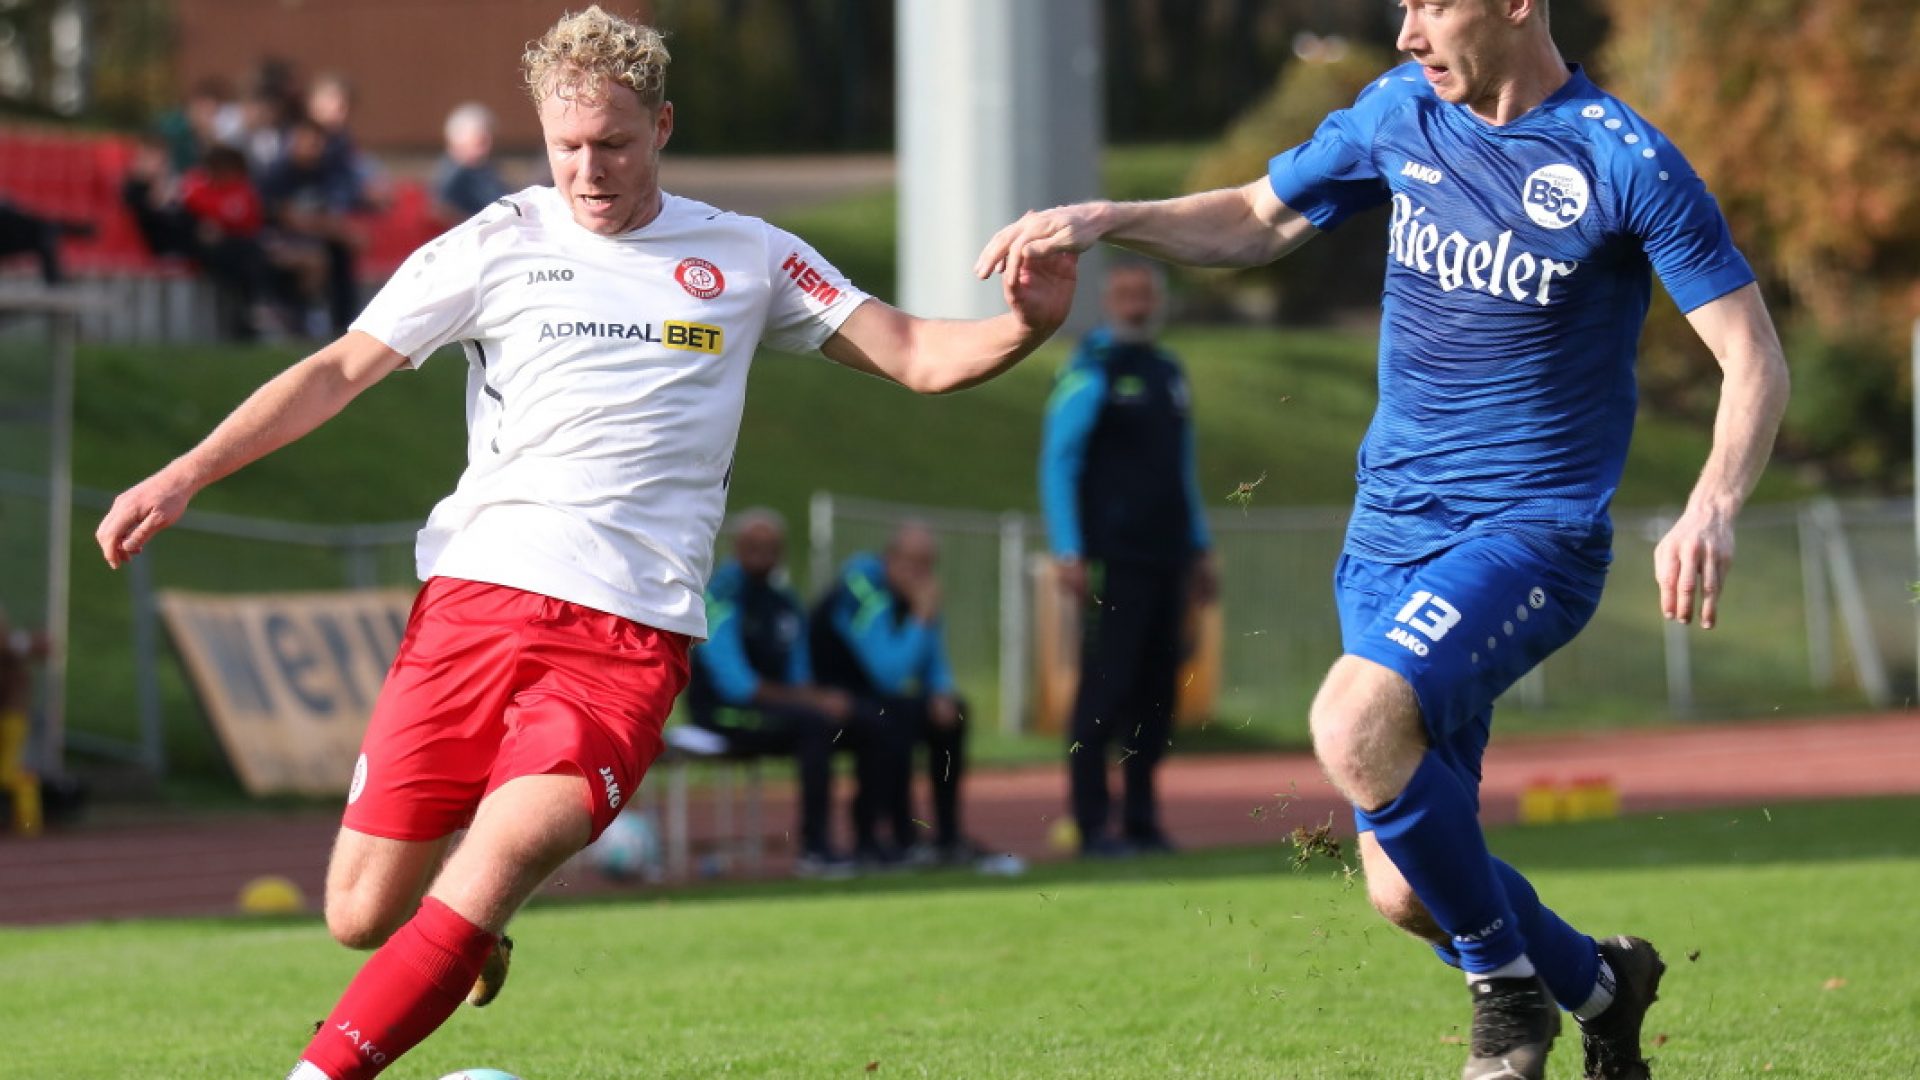 SBFV Verbandsliga Südbaden 2022/23
29.10.2022
SC Pfullendorf - Bahlinger SC U23 0:1 (0:1)